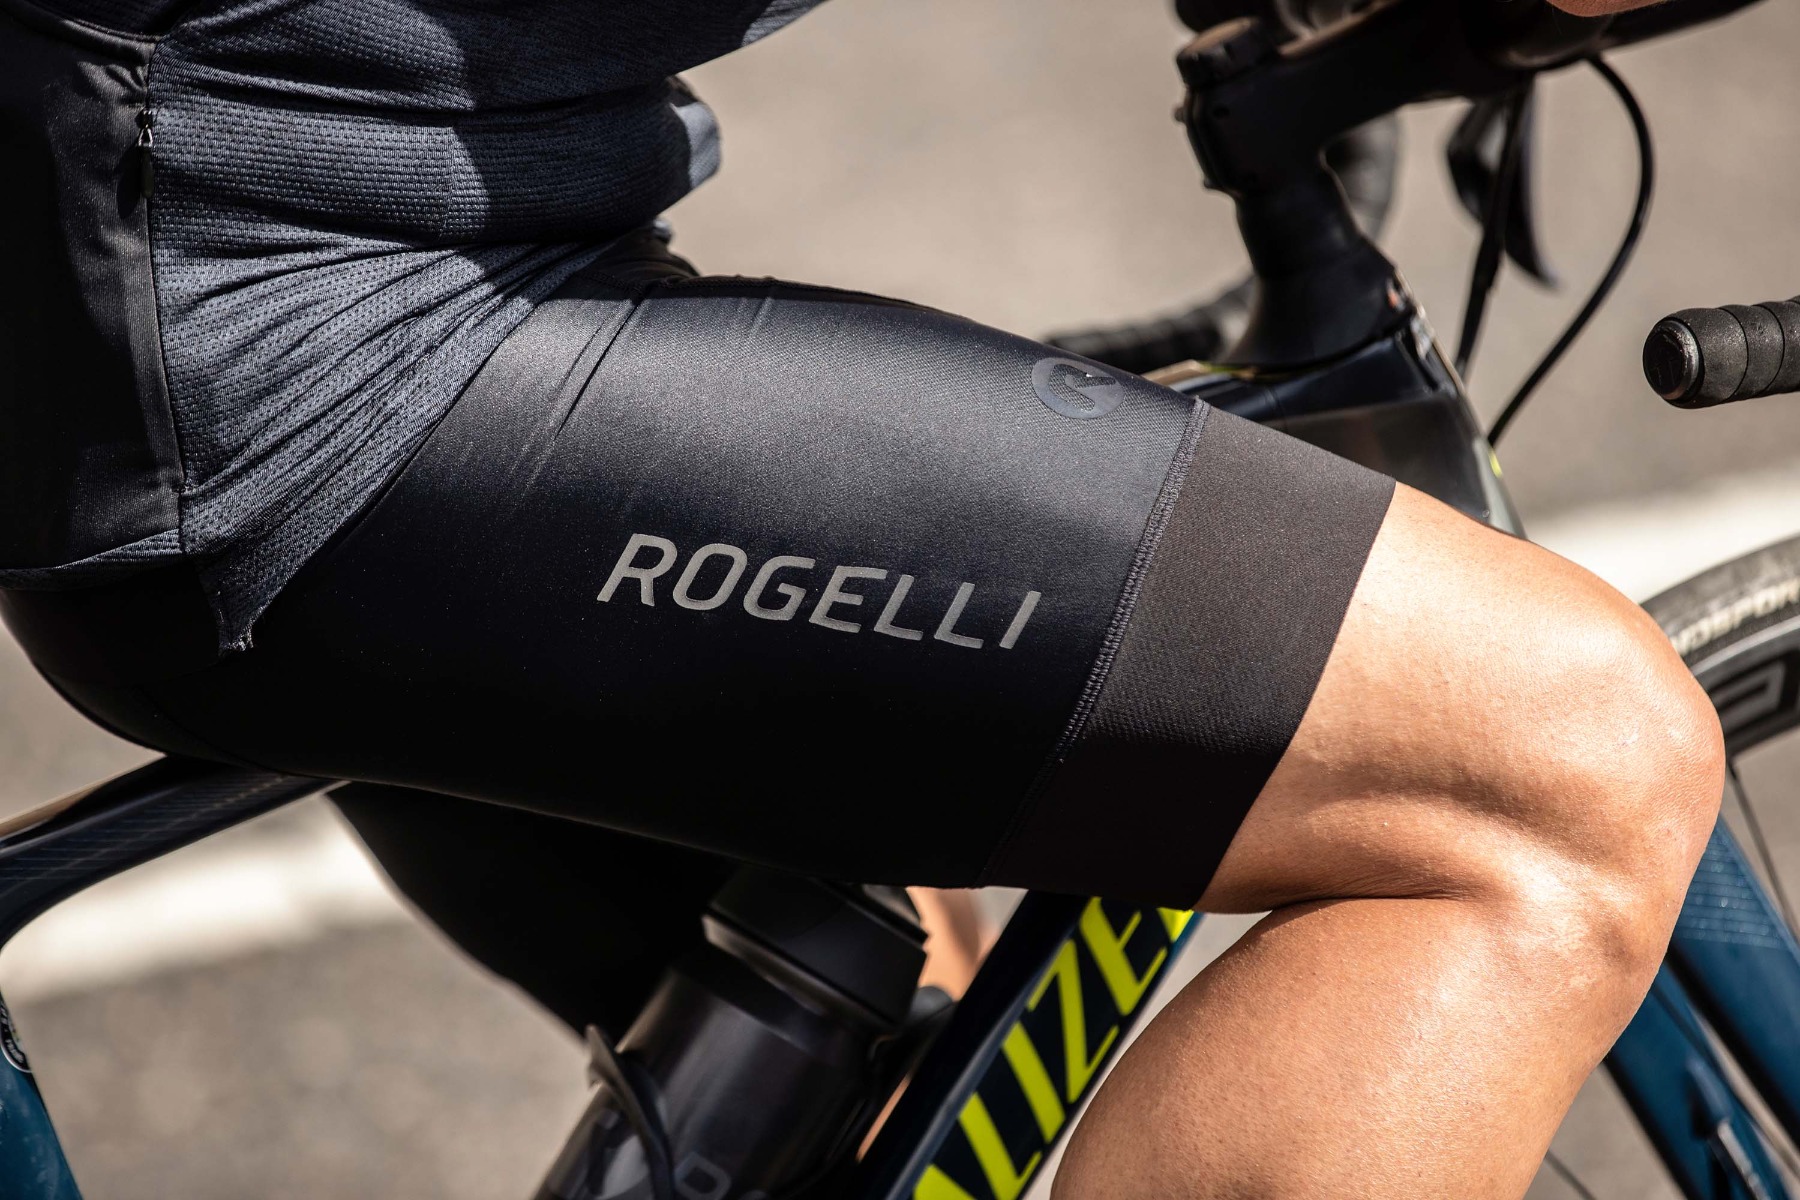 Een close-up van een korte Rogelli fietsbroek, waarbij de details en kwaliteit duidelijk zichtbaar zijn.